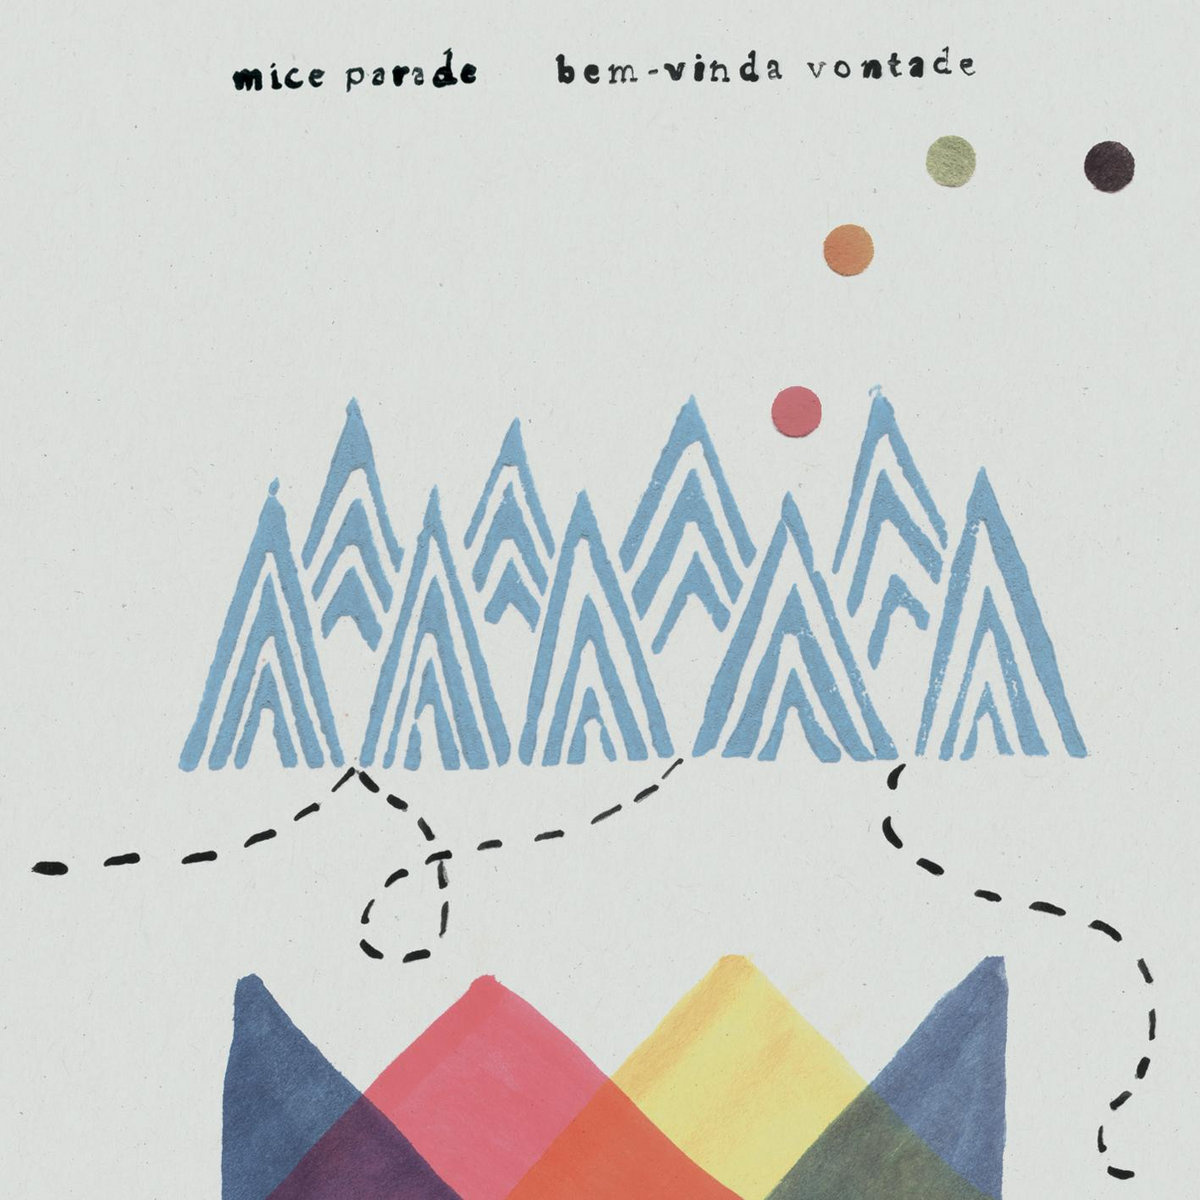 Mice Parade - Bem-Vinda Vontade vinyl cover